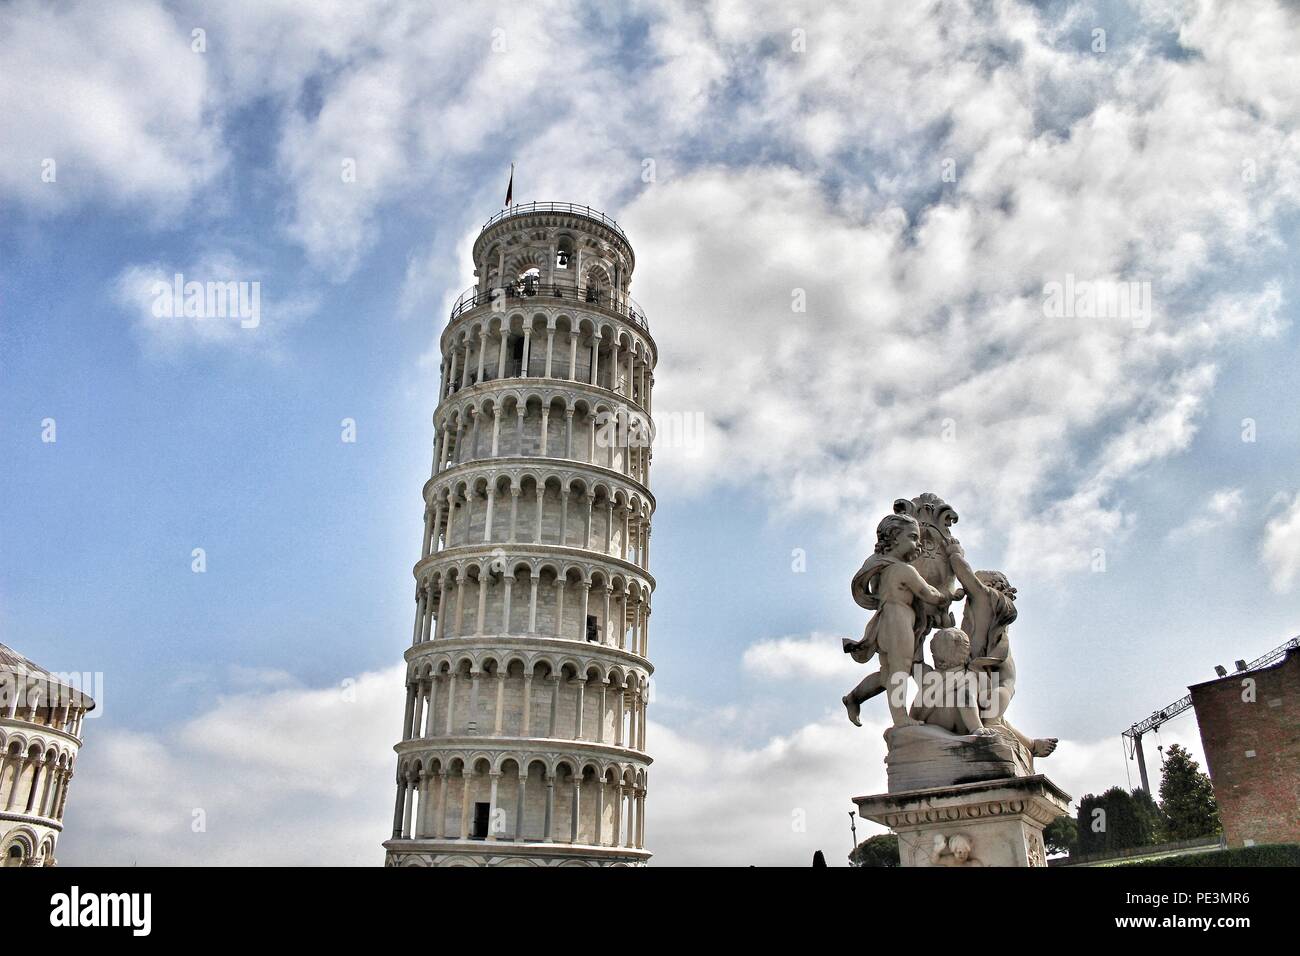 La statua di angeli in Piazza dei Miracoli a Pisa e la Torre Pendente, Pisa, Italia Foto Stock